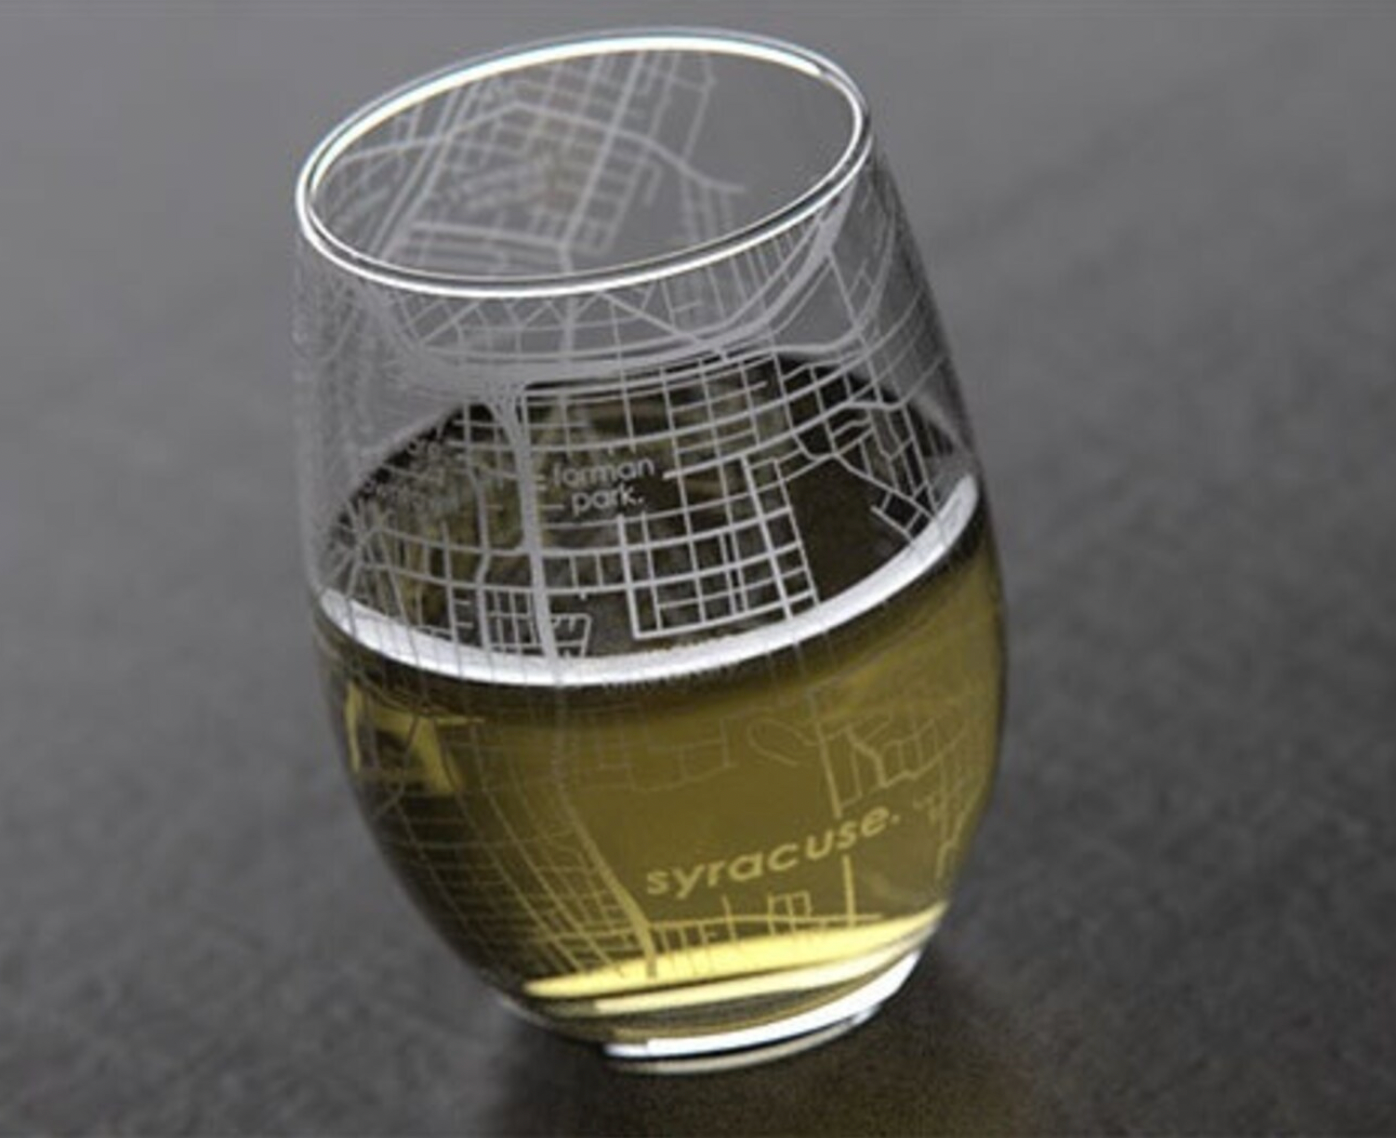 Syracuse NY Map Wine Glass